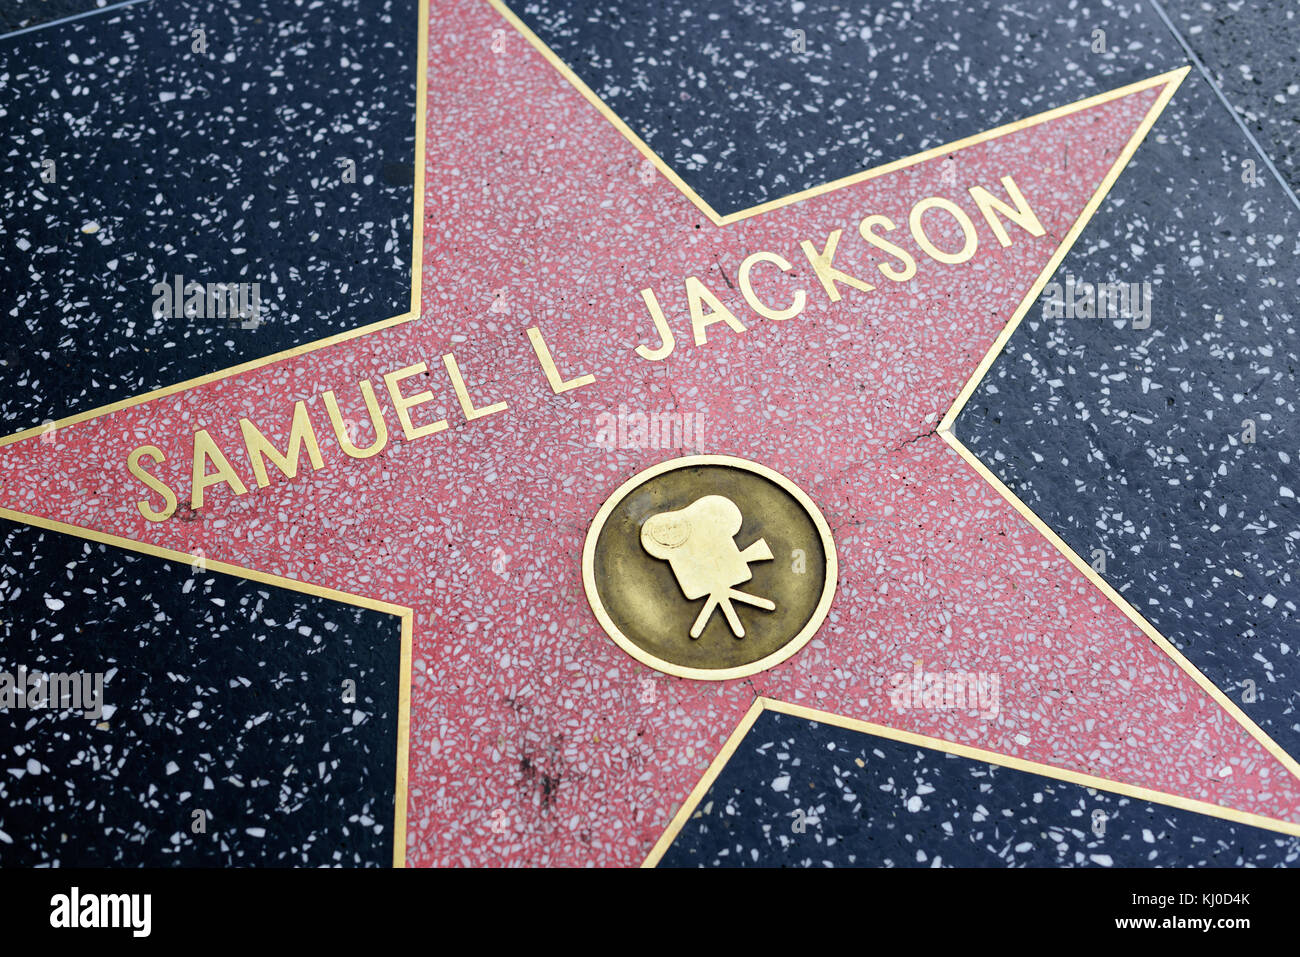 HOLLYWOOD, CA - DICEMBRE 06: Samuel L Jackson stella sulla Hollywood Walk of Fame a Hollywood, California il 6 dicembre 2016. Foto Stock